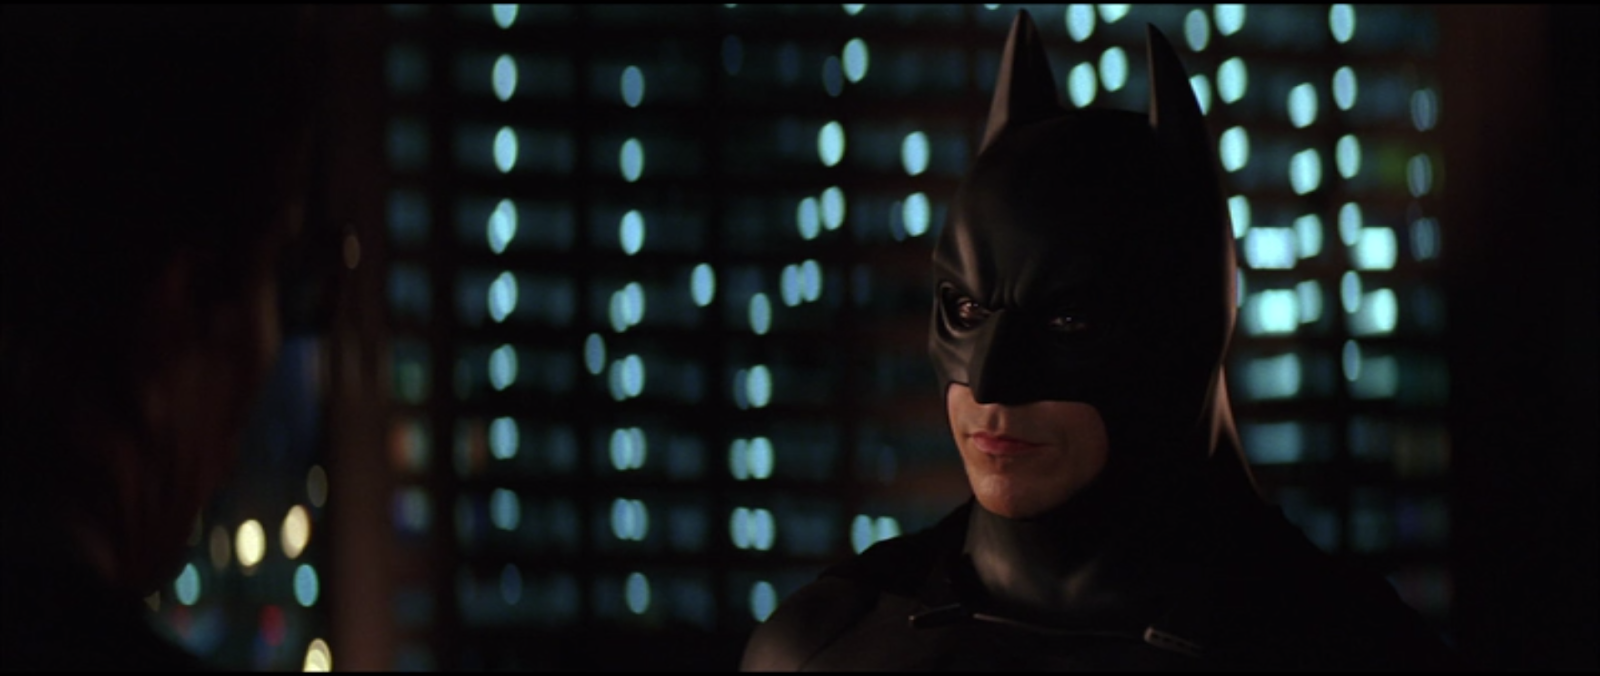 AoM: Movies et al.: Batman Begins (2005)